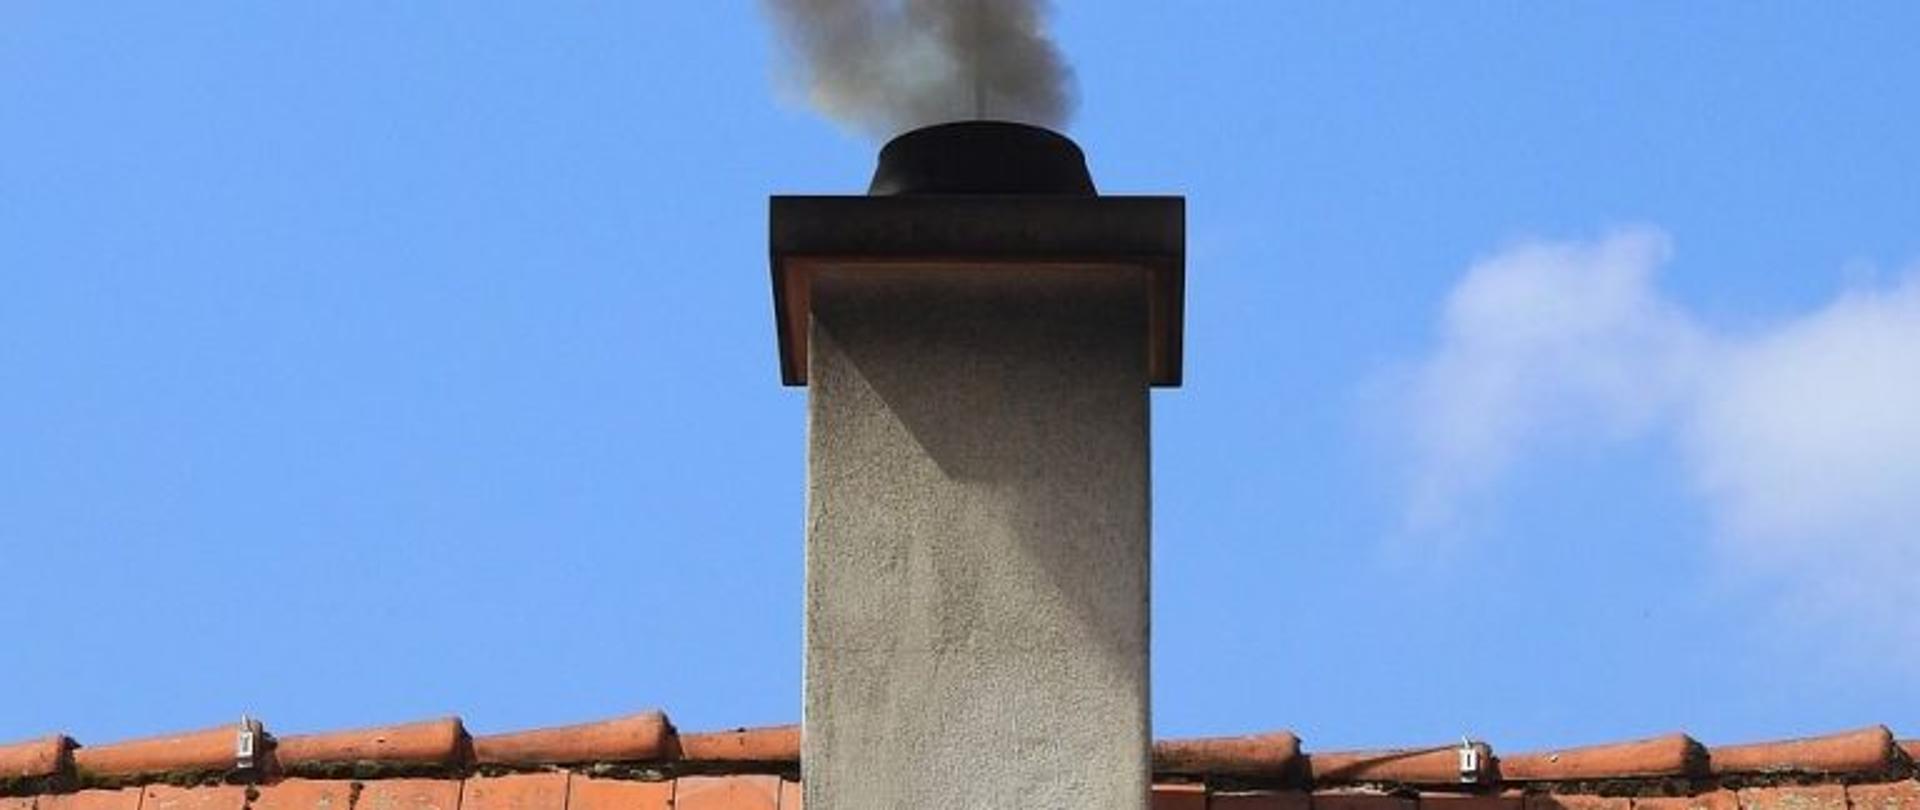 Na zdjęciu dymiący komin z kawałkiem dachu pokrytym dachówką ceramiczną koloru pomarańczowego.